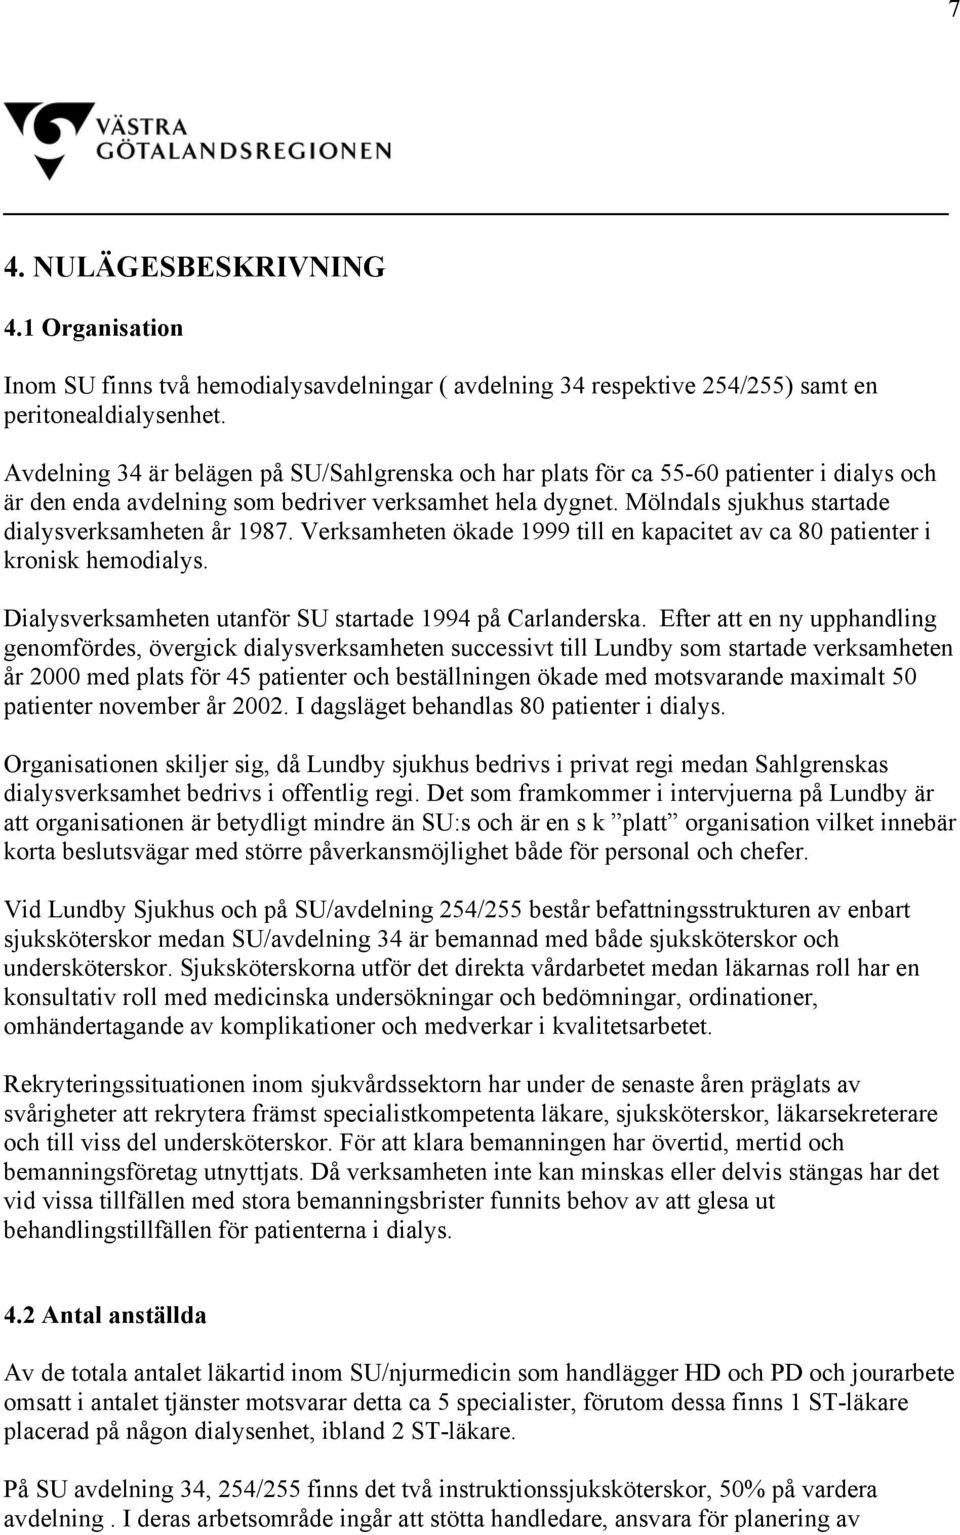 Mölndals sjukhus startade dialysverksamheten år 1987. Verksamheten ökade 1999 till en kapacitet av ca 80 patienter i kronisk hemodialys. Dialysverksamheten utanför SU startade 1994 på Carlanderska.